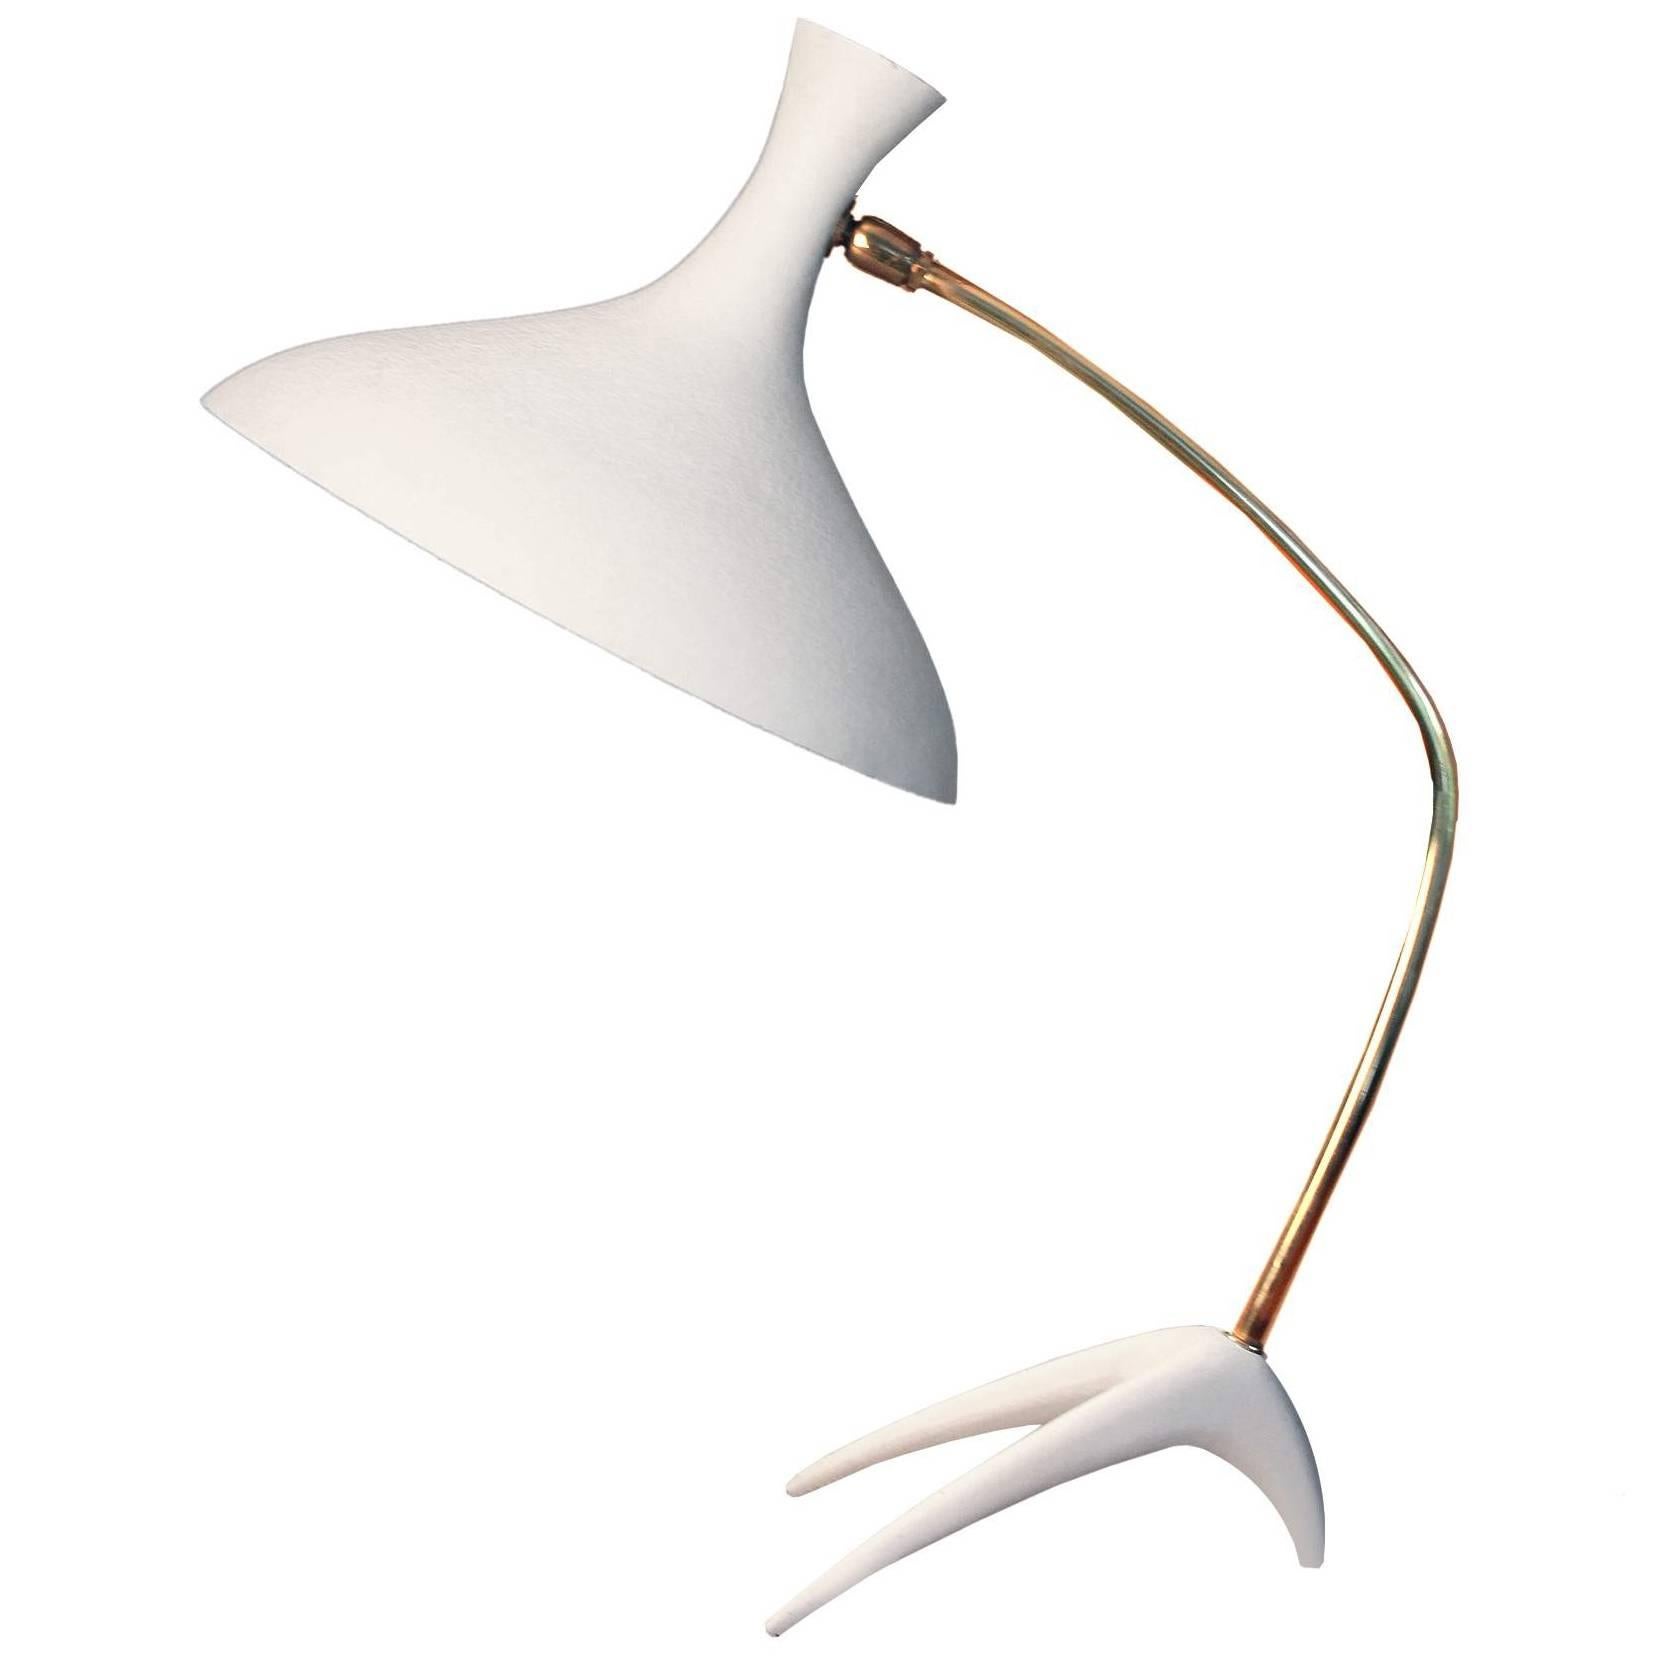 Louis Kalff Table Lamp, 1950s Stilnovo Style Modernist Design  